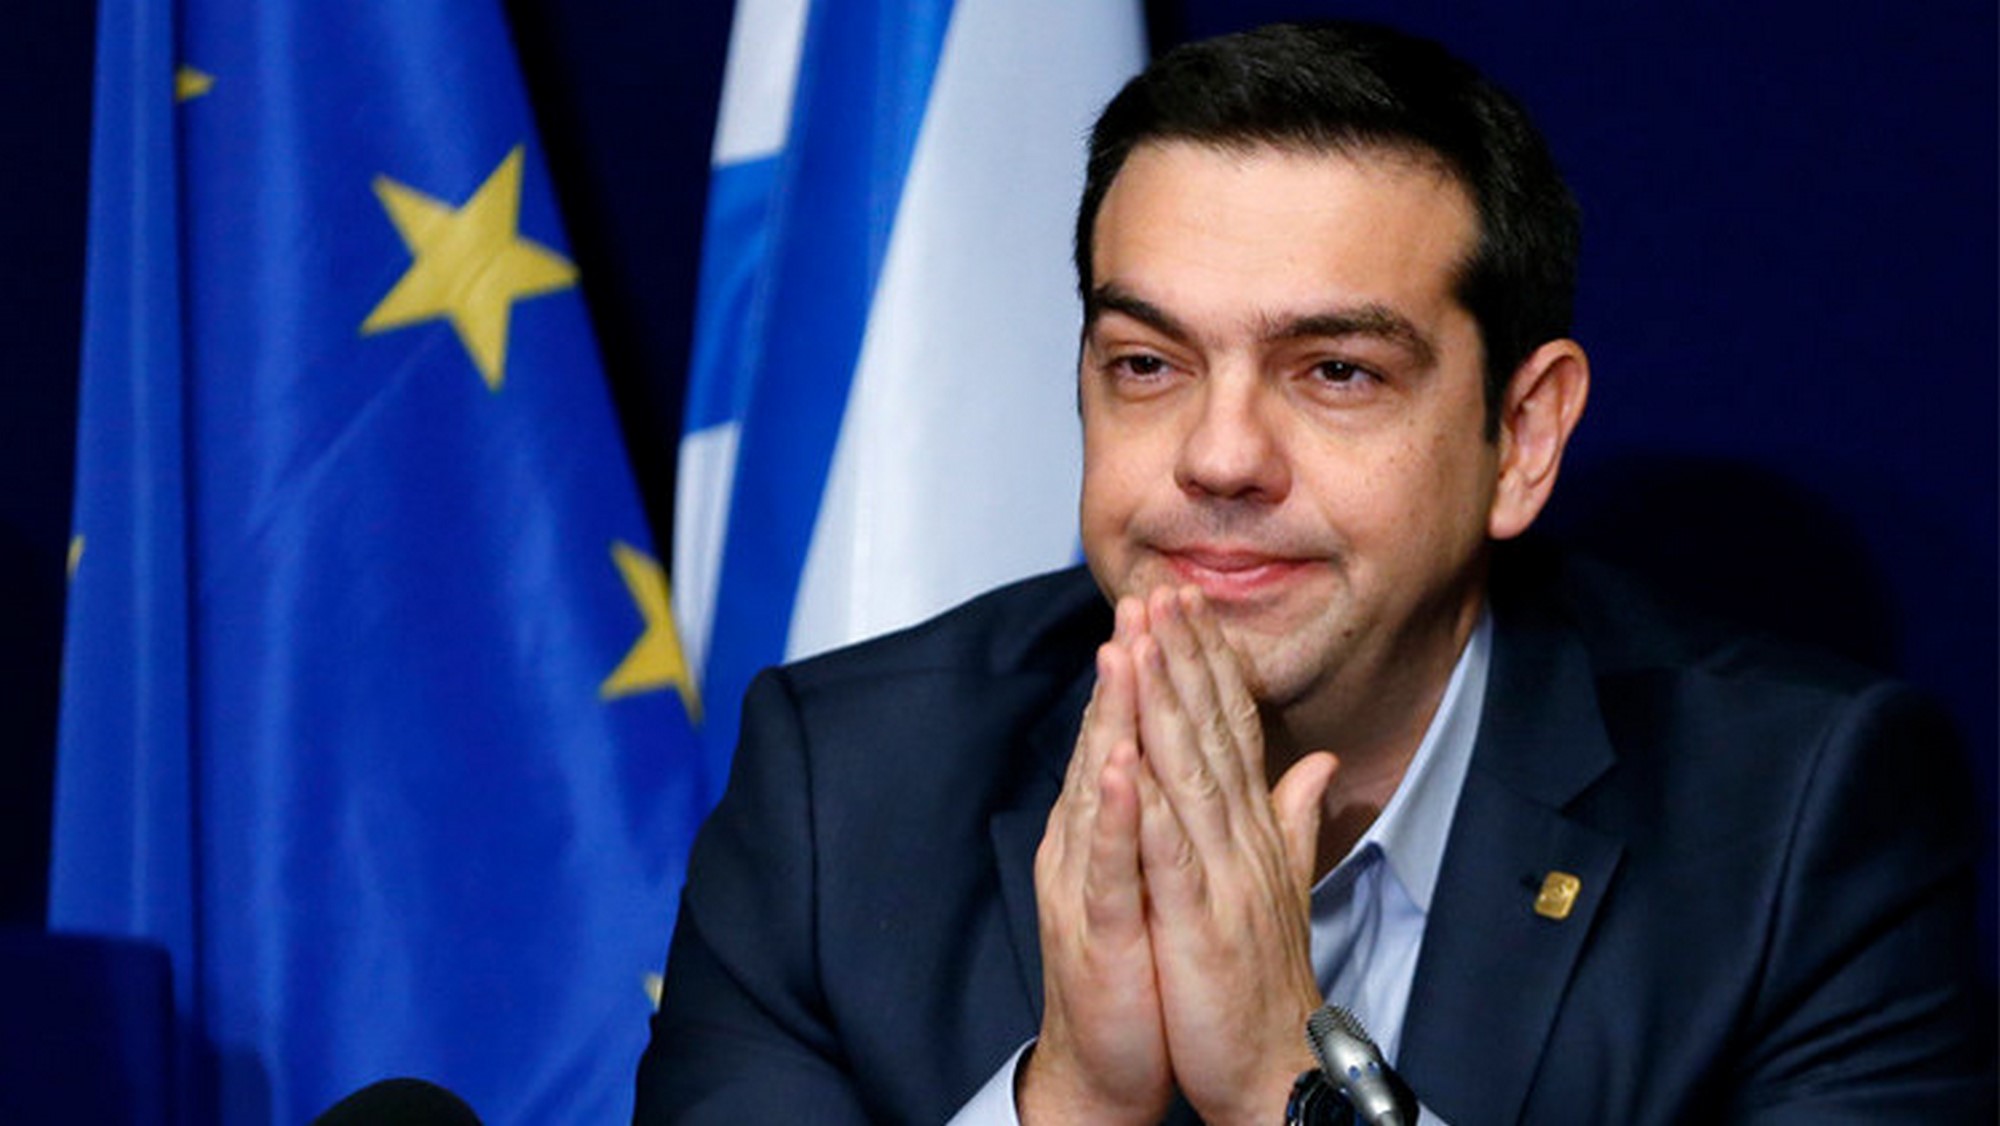   رئيس وزراء اليونان يقدم خالص تعازيه للرئيس للسيسى